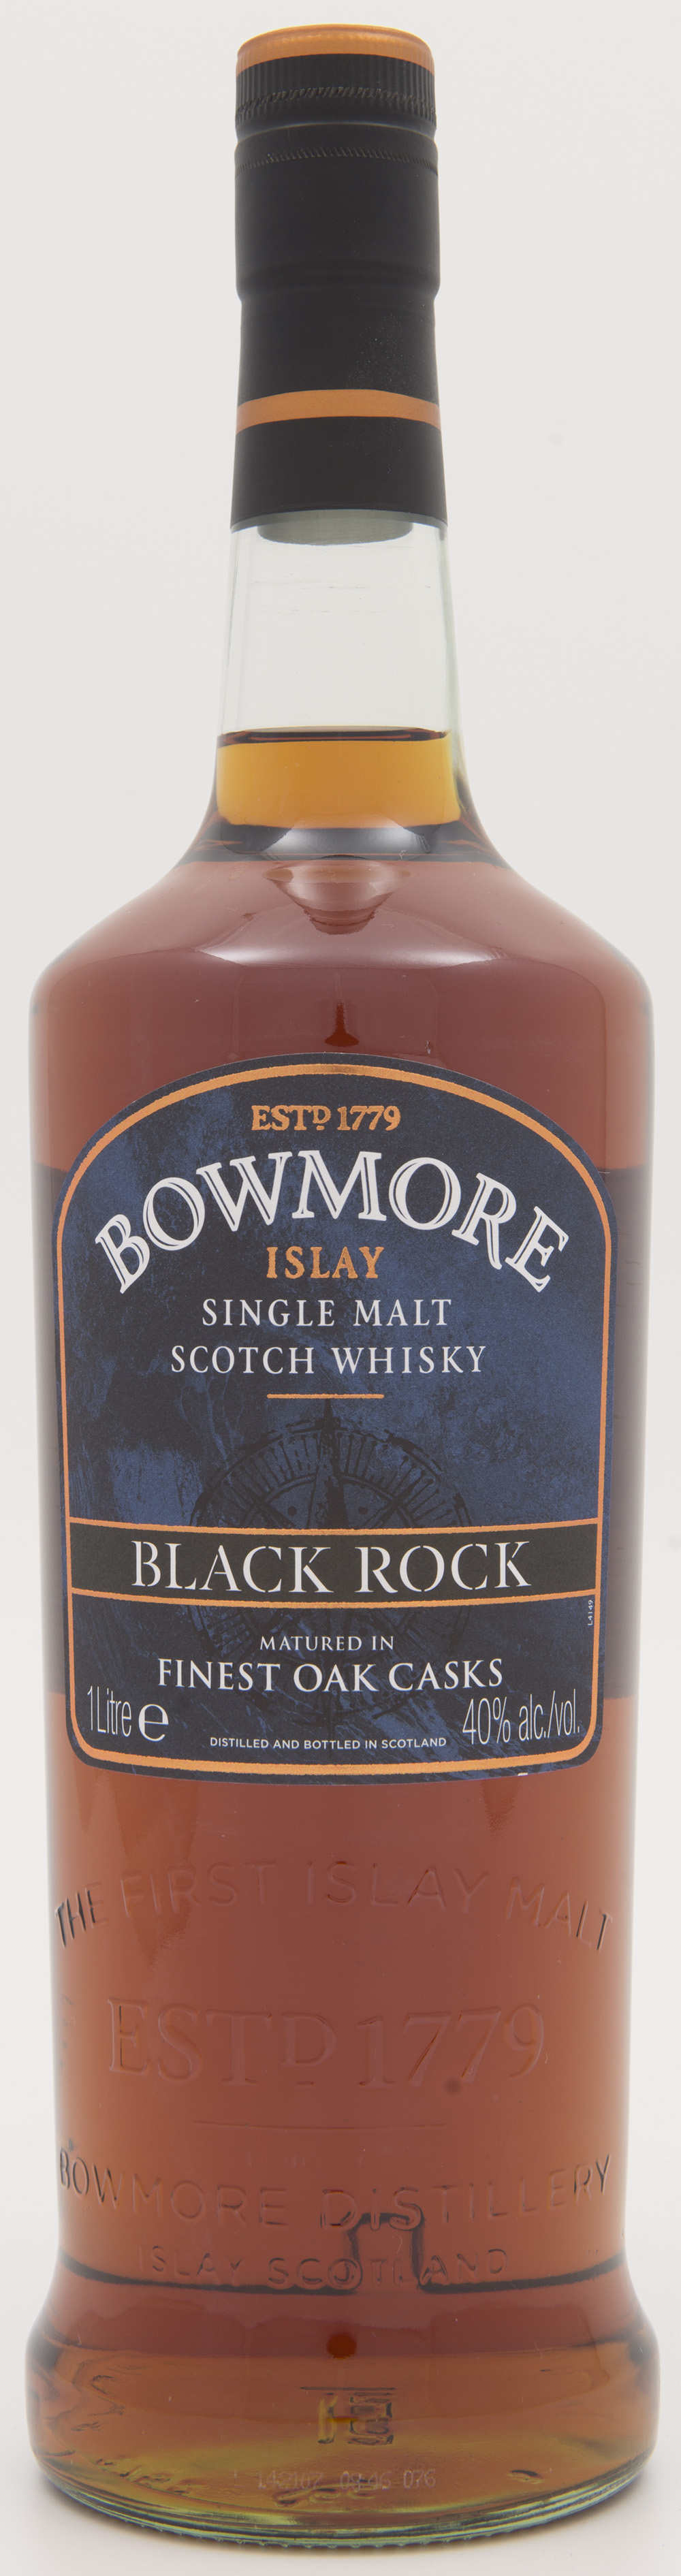 Billede: DSC_3842 Bowmore Black Rock - bottle front.jpg